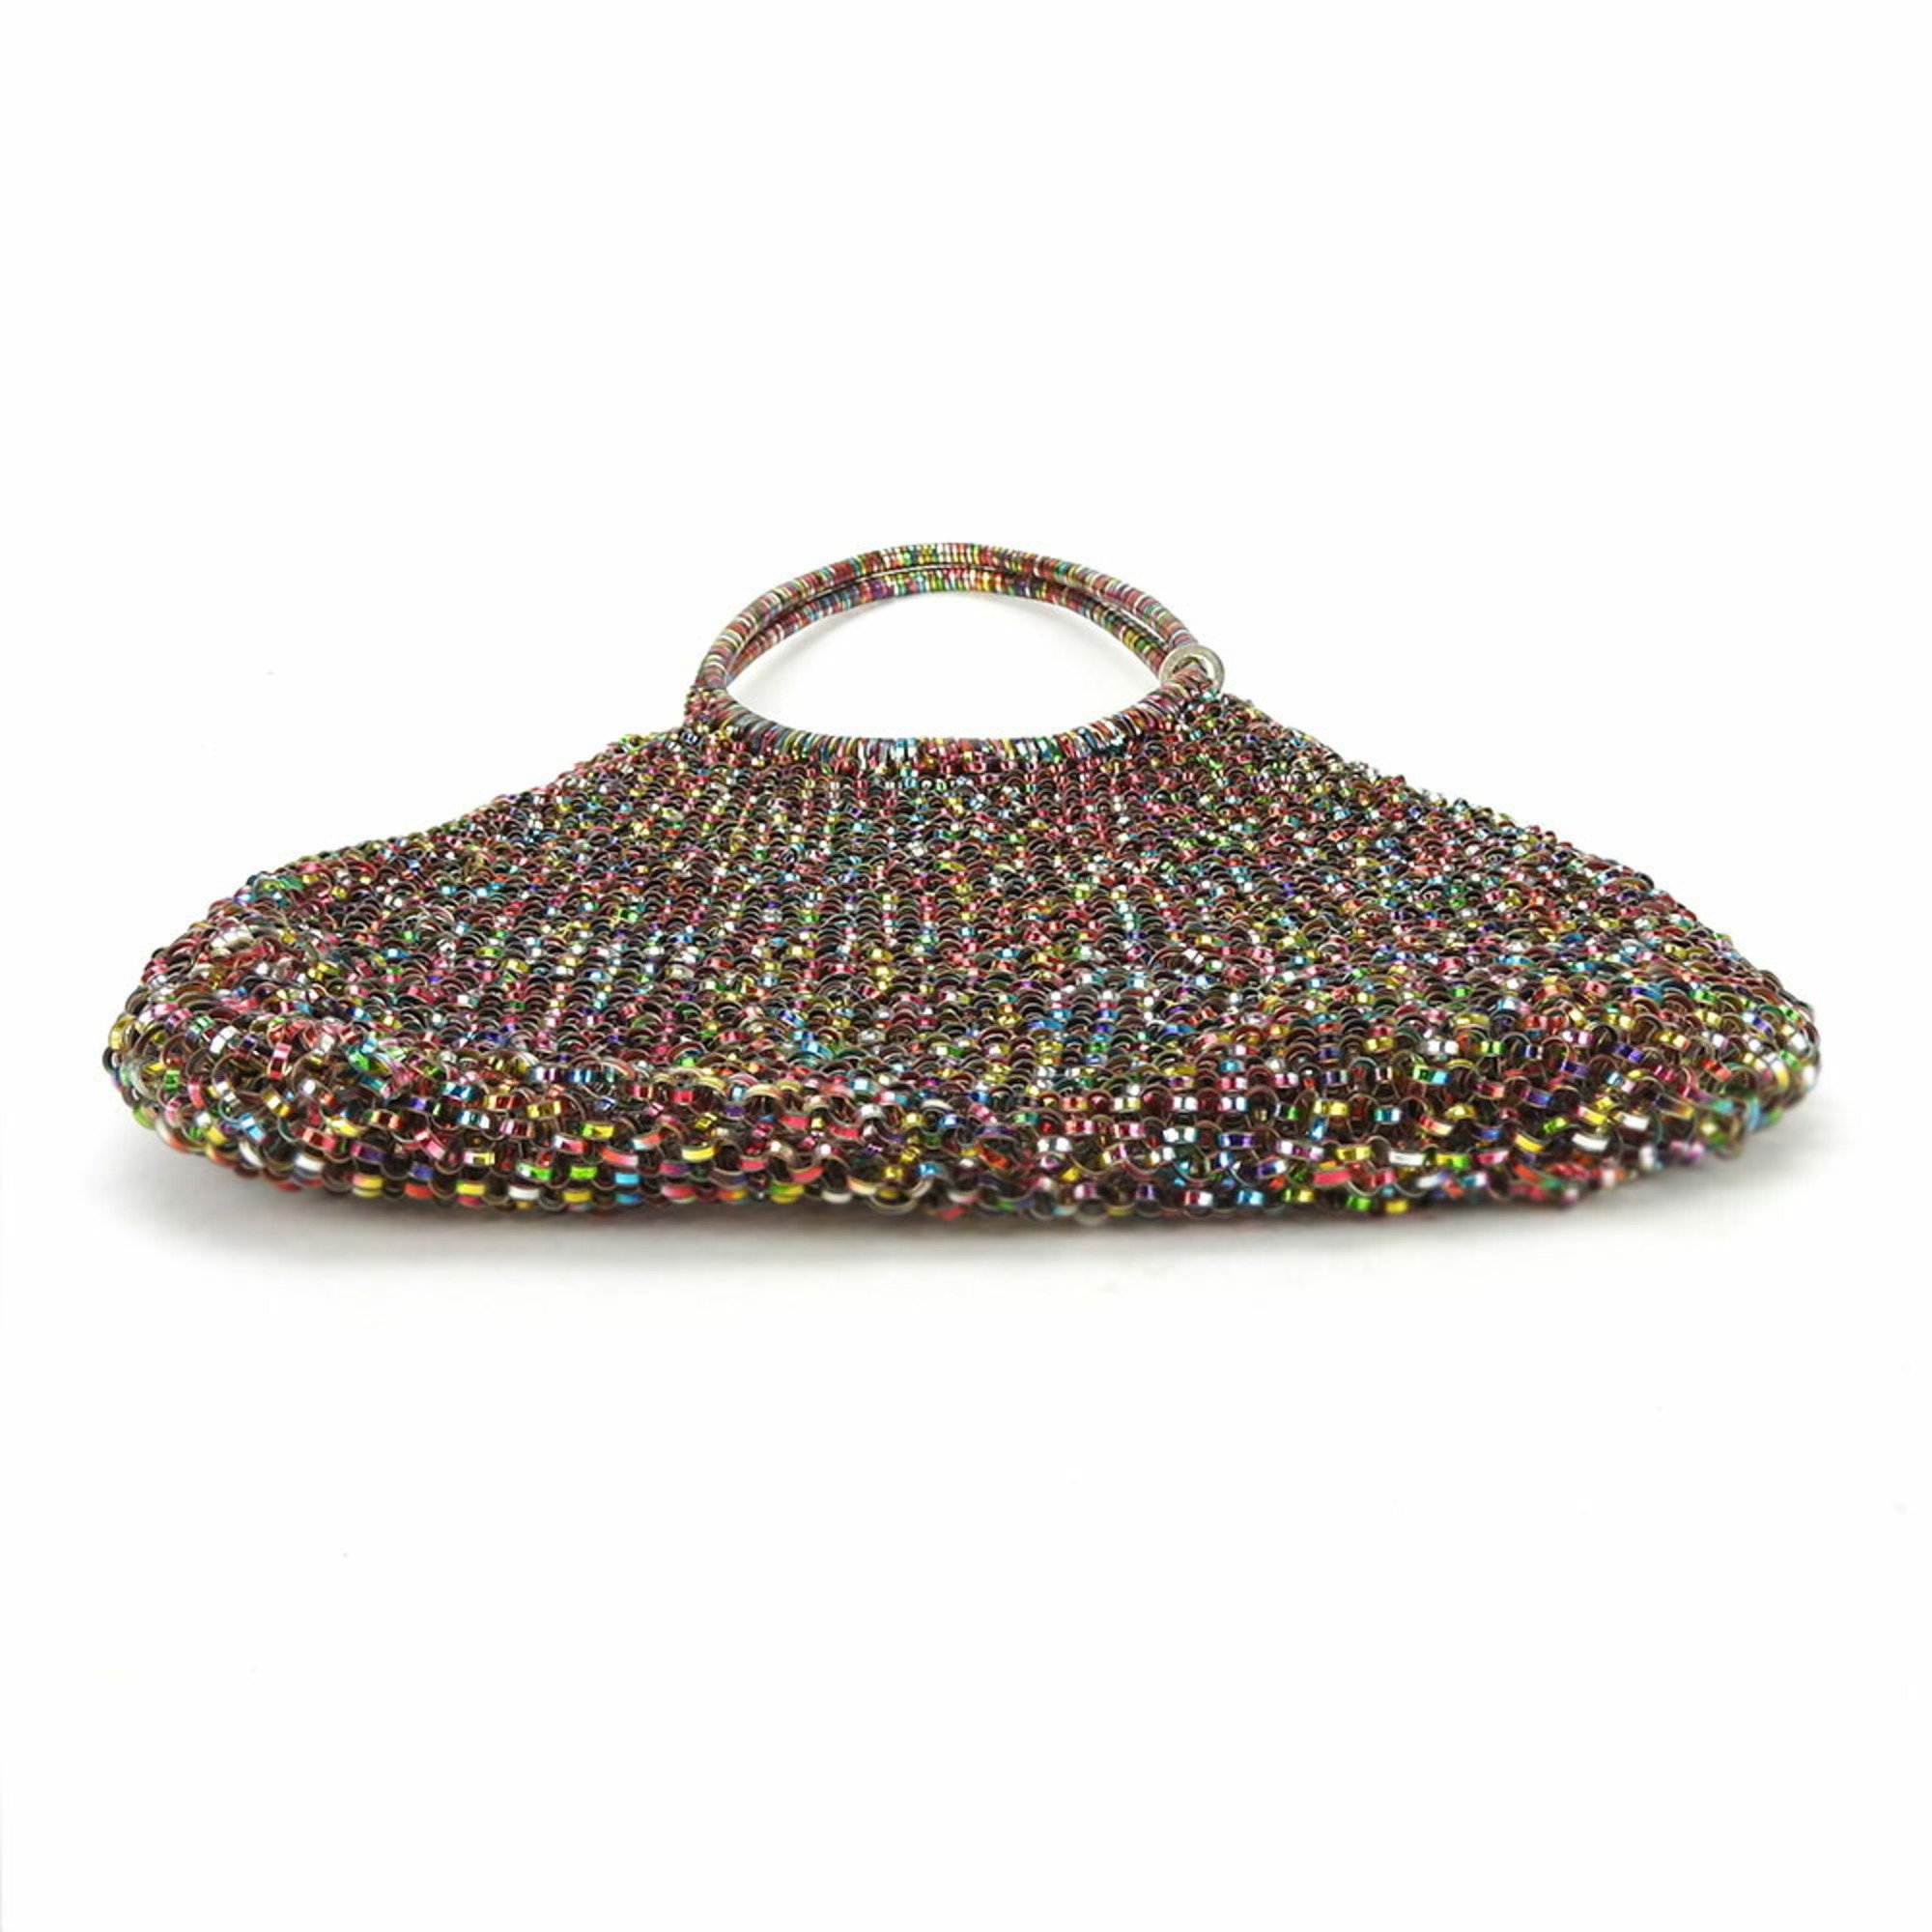 ANTEPRIMA Handbag Wire Bag Multicolor Women's